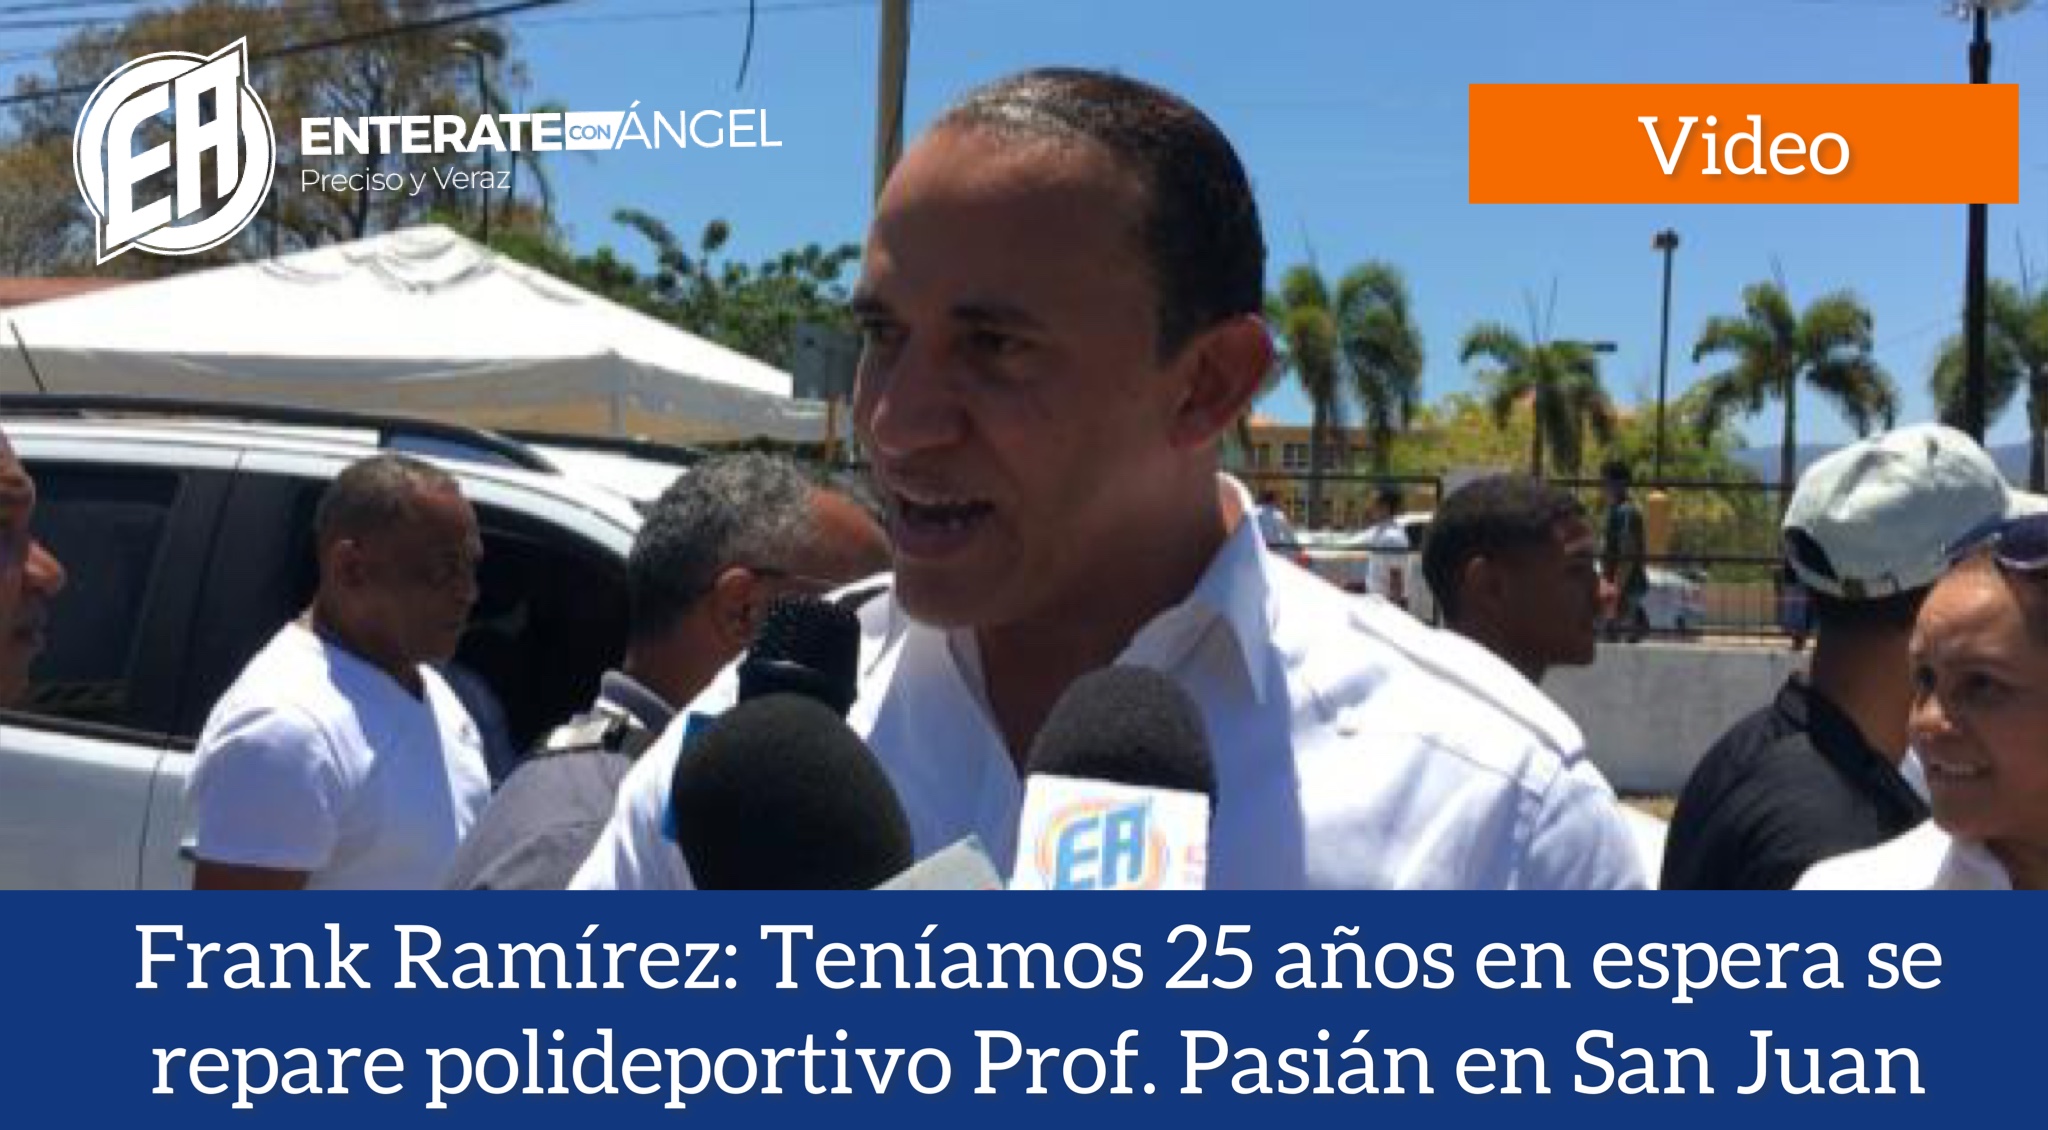 Frank Ramírez: “Teníamos 25 años en espera se repare polideportivo Prof. Pasián en San Juan”